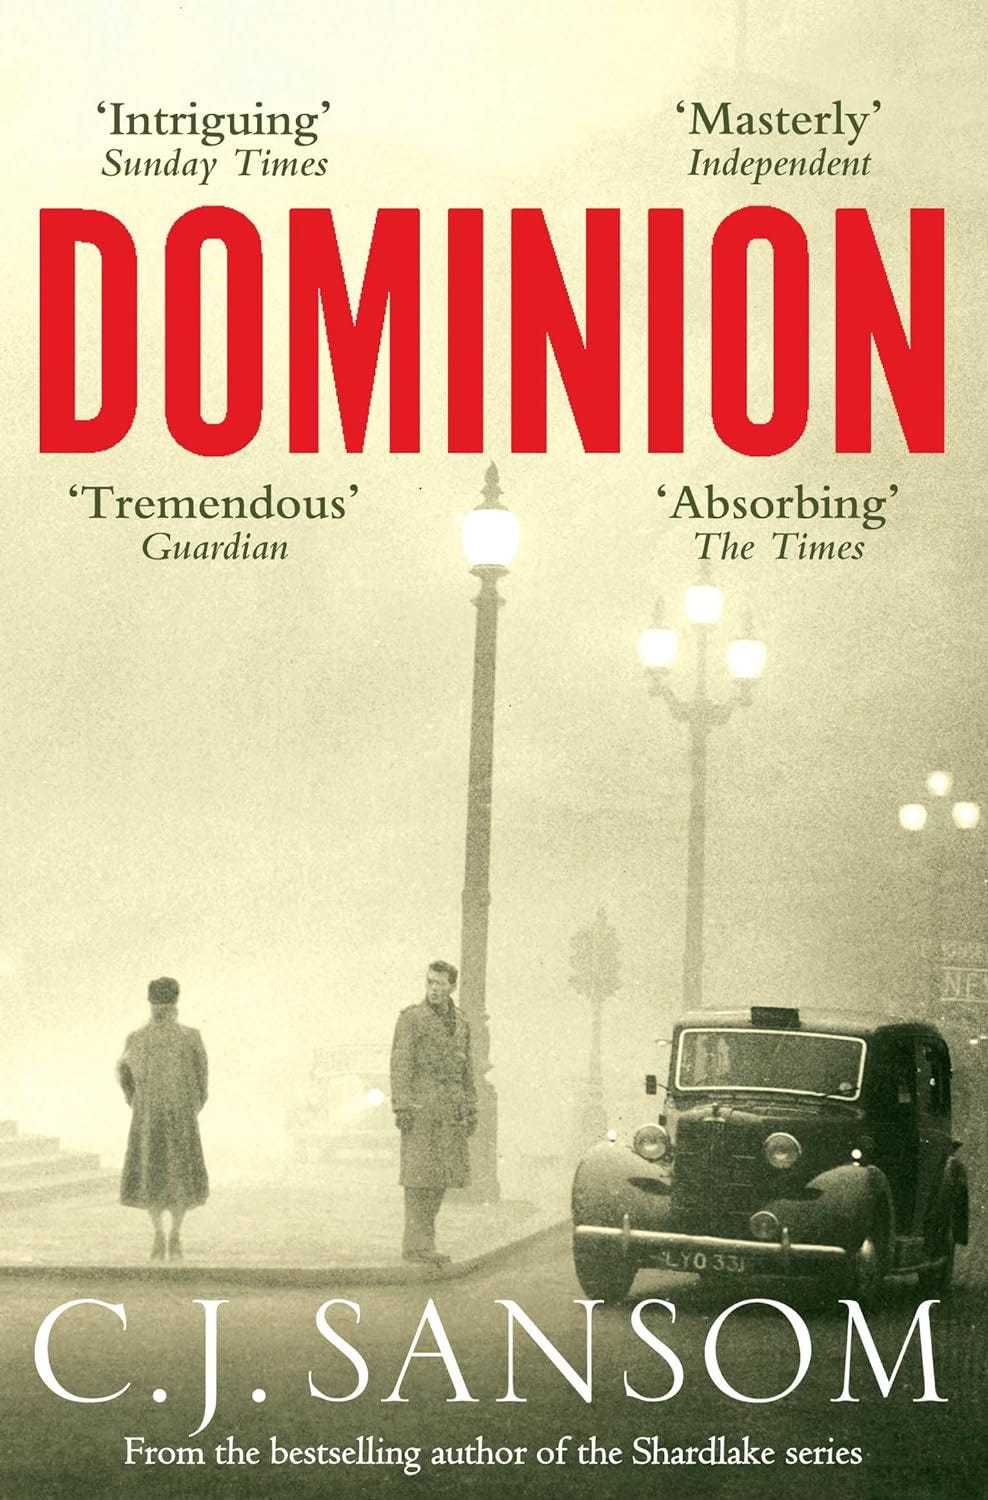 C.J. Sansom'dan "Dominion" kitap kapağı